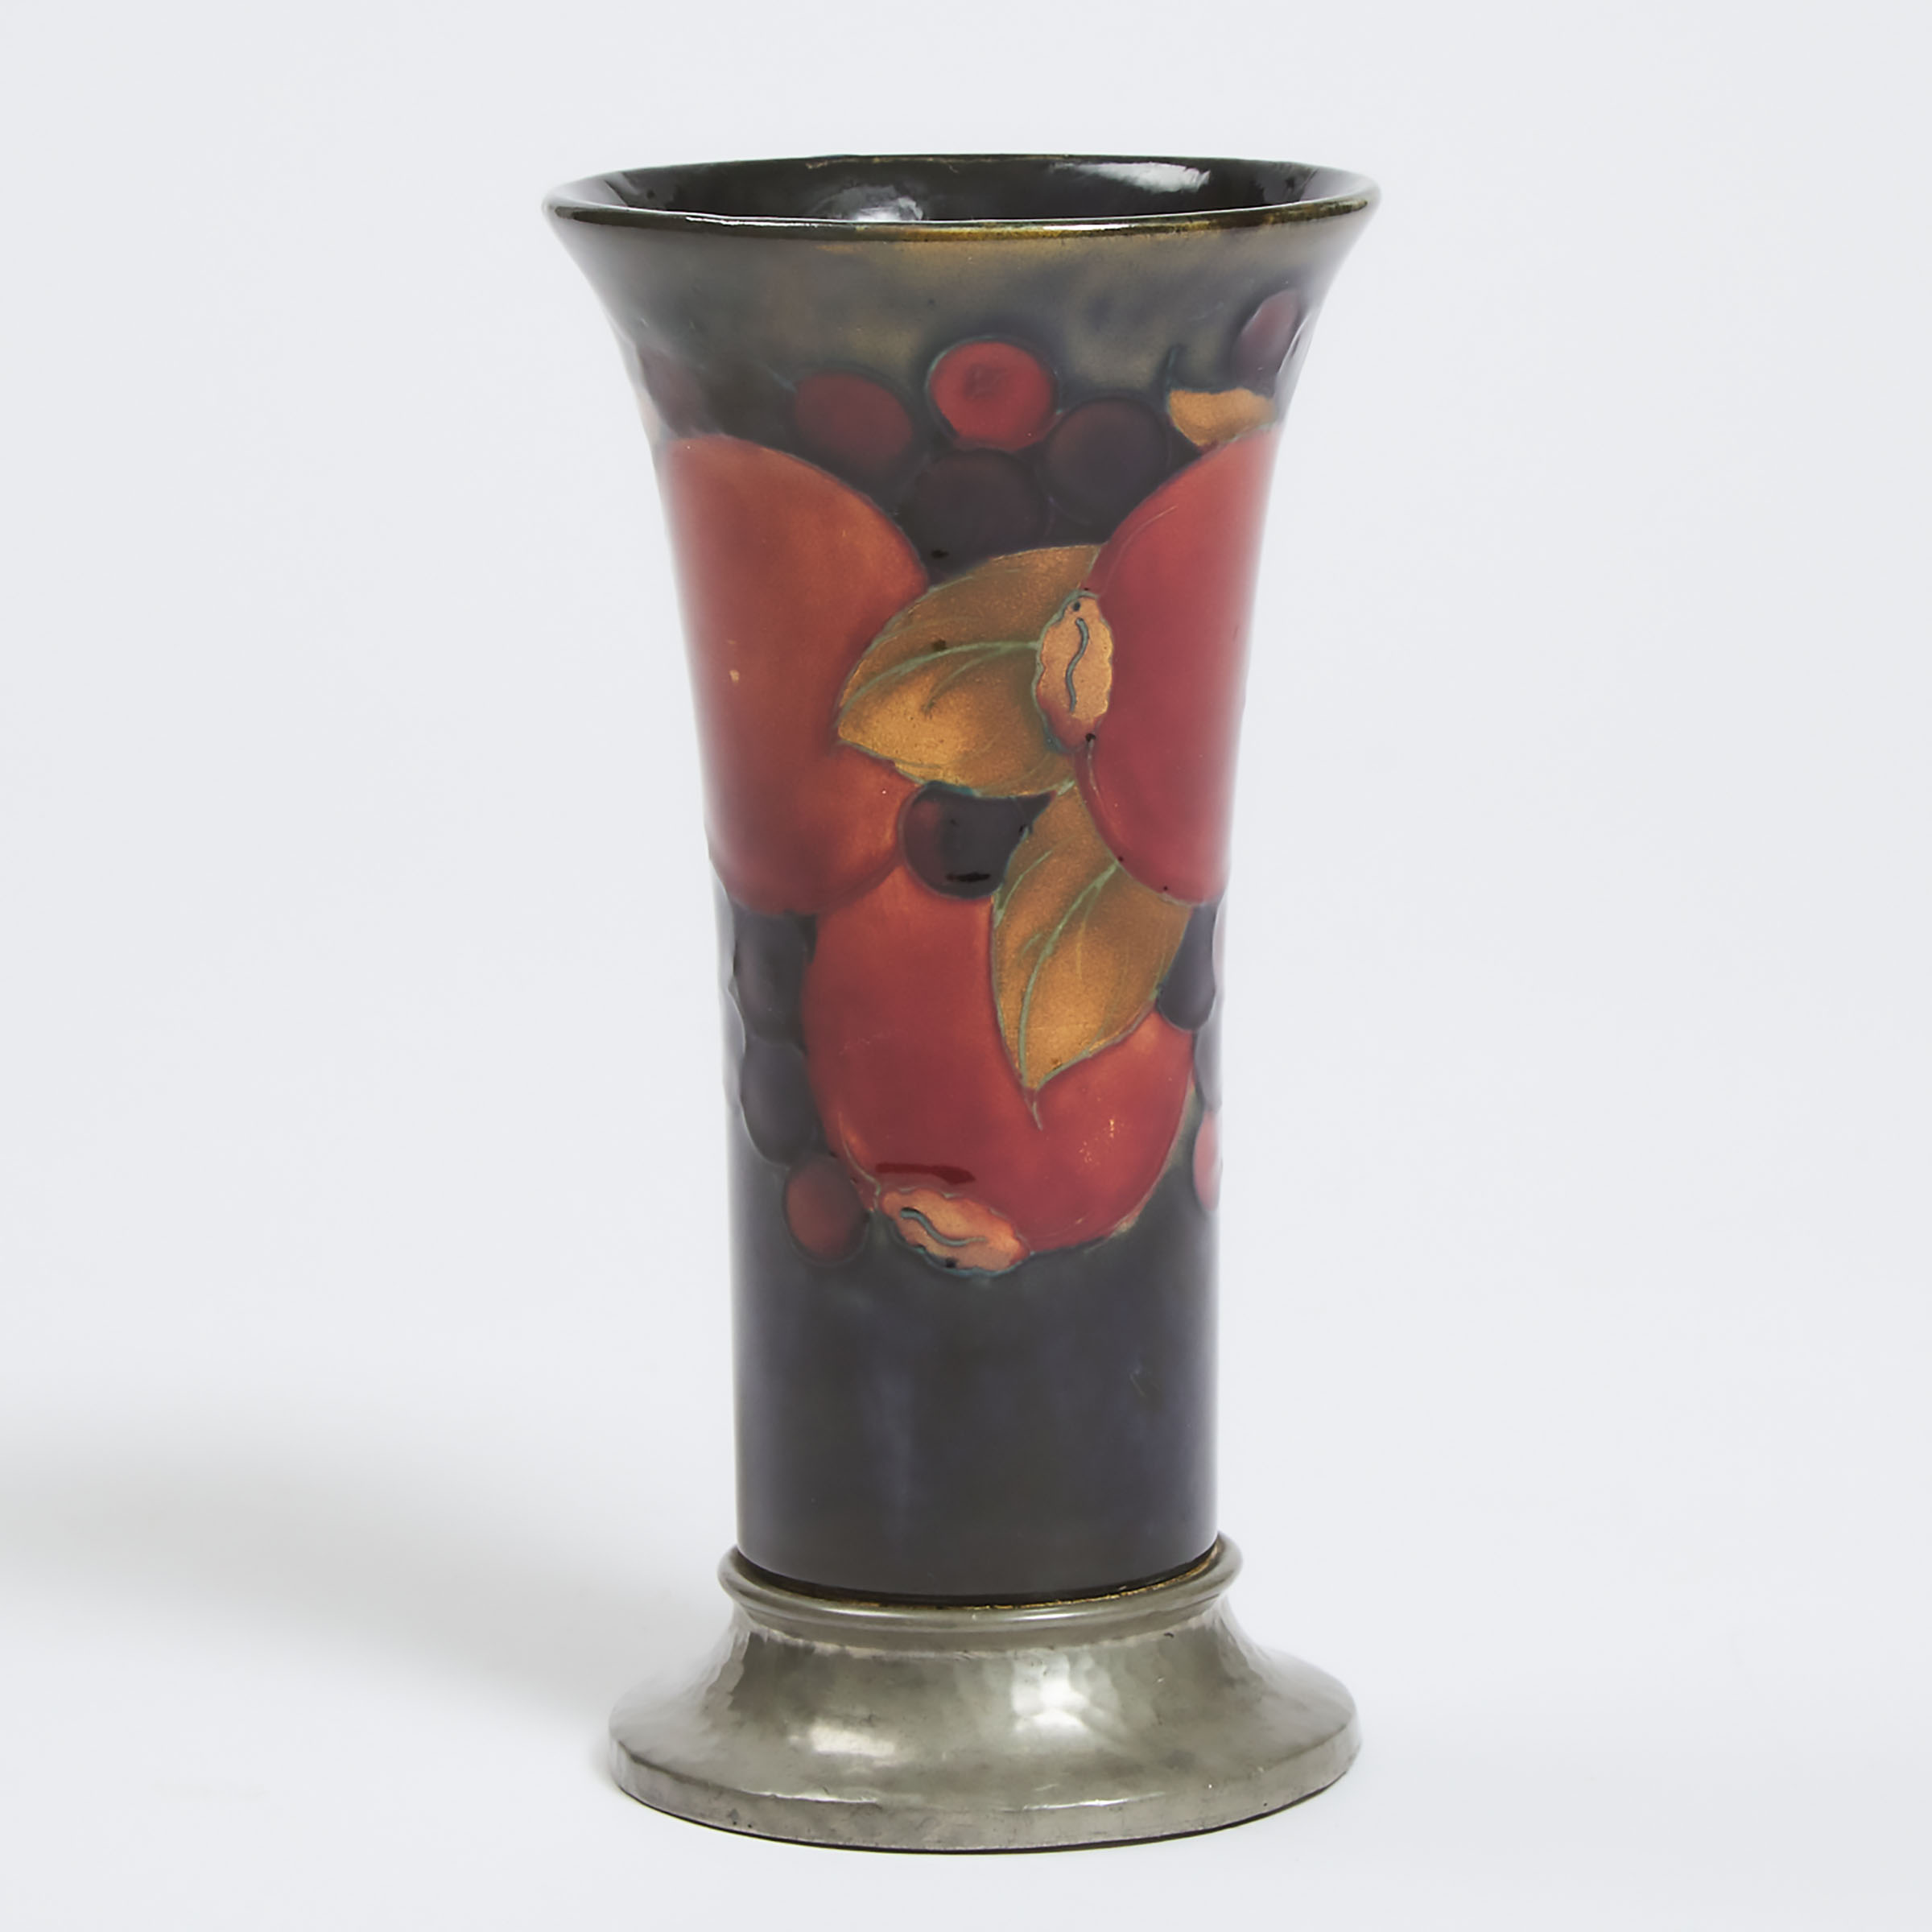 Moorcroft 'Tudric' Pewter Mounted Pomegranate Vase, for Liberty & Co., c.1920